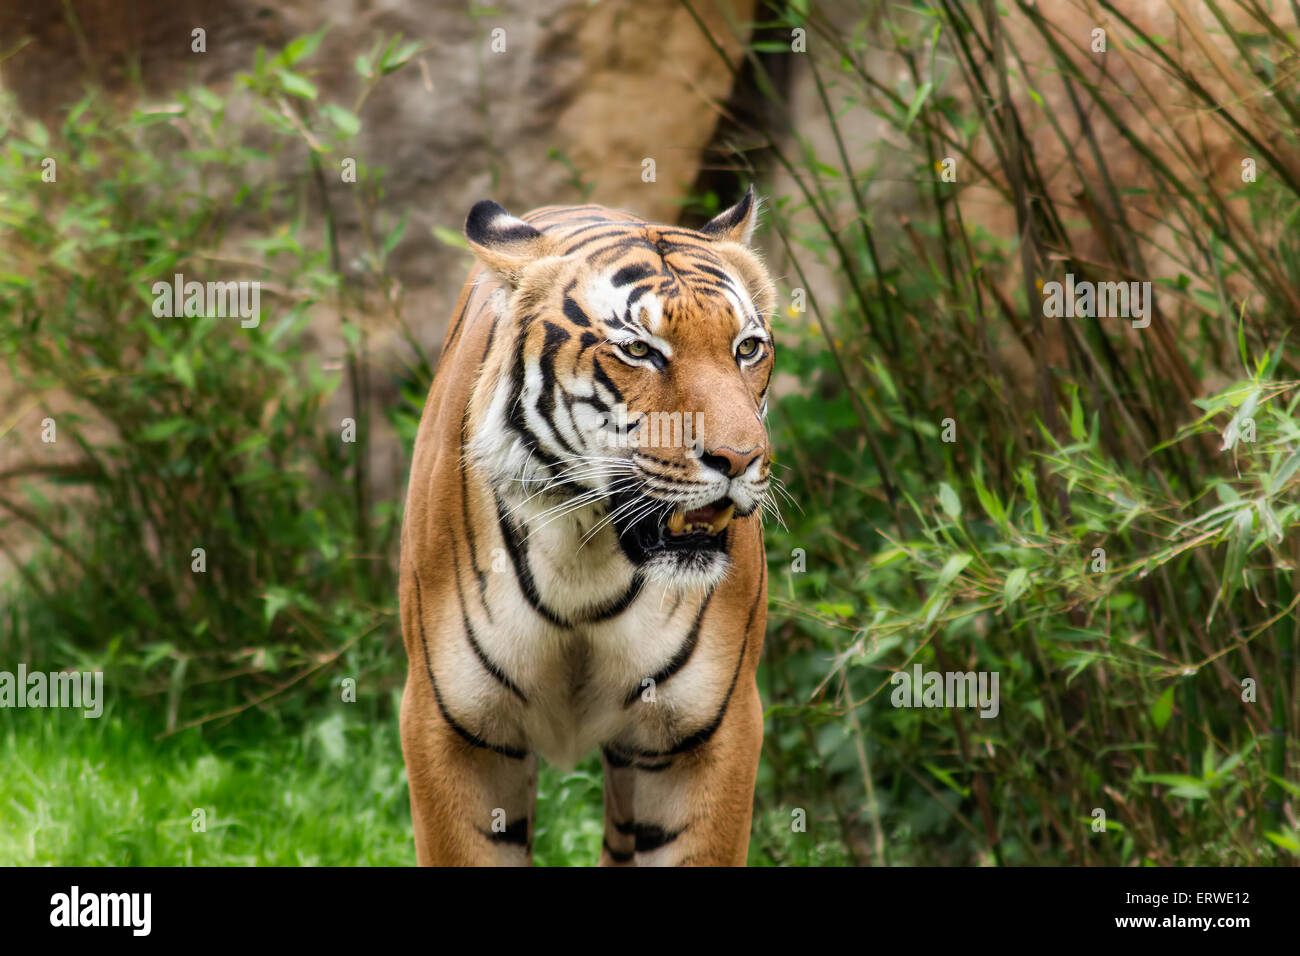 Porträt eines schönen Tigers.  Konzept der Tierwelt. Stockfoto